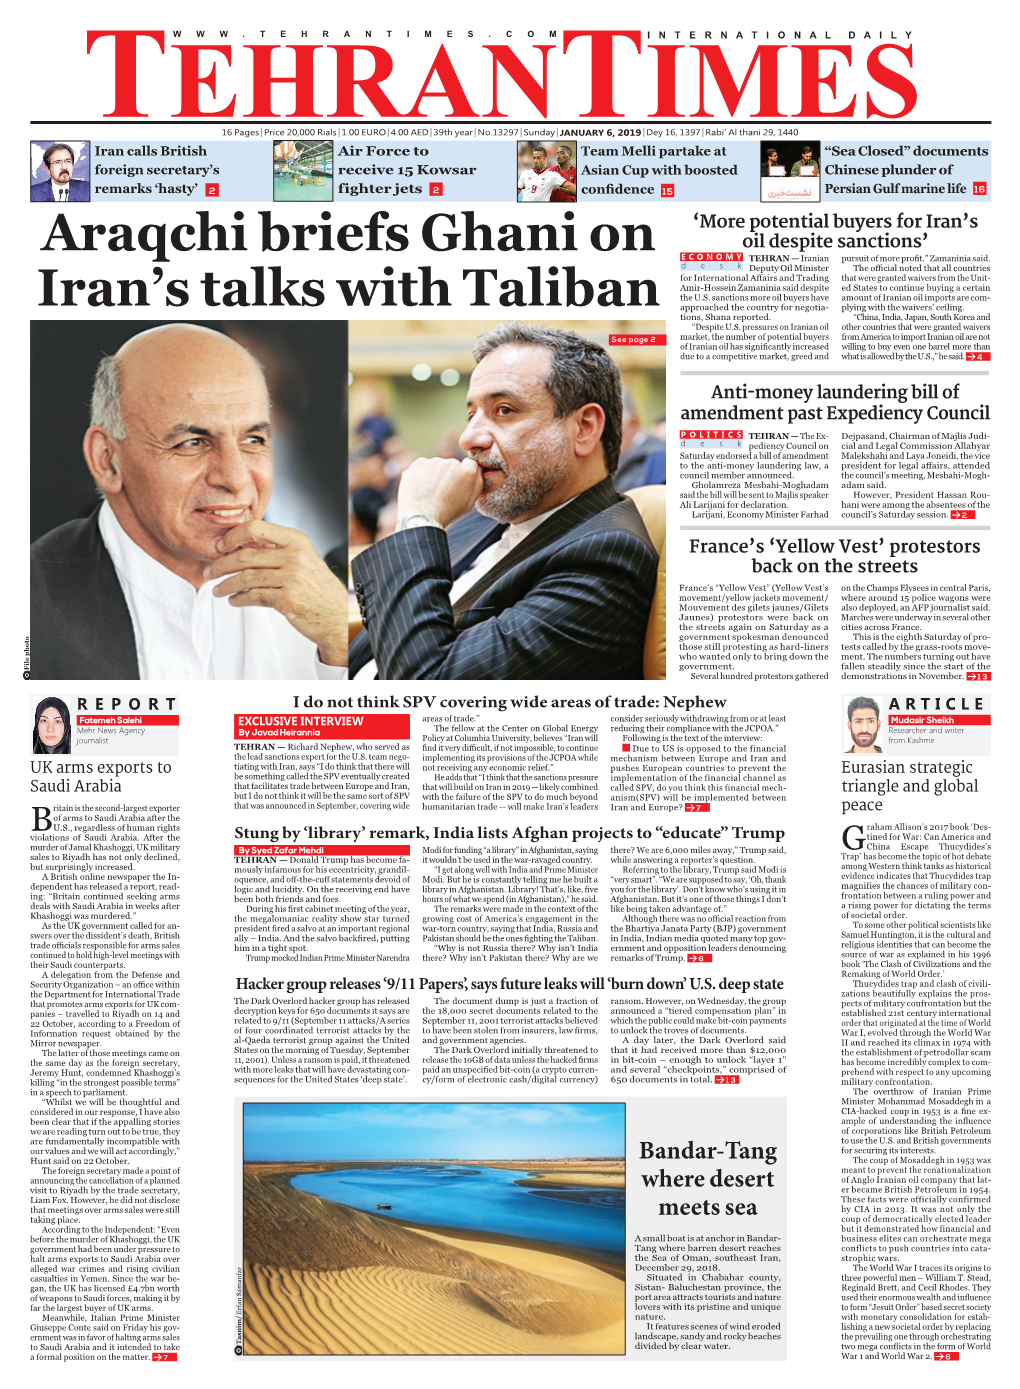 Araqchi Briefs Ghani on Iran's Talks with Taliban